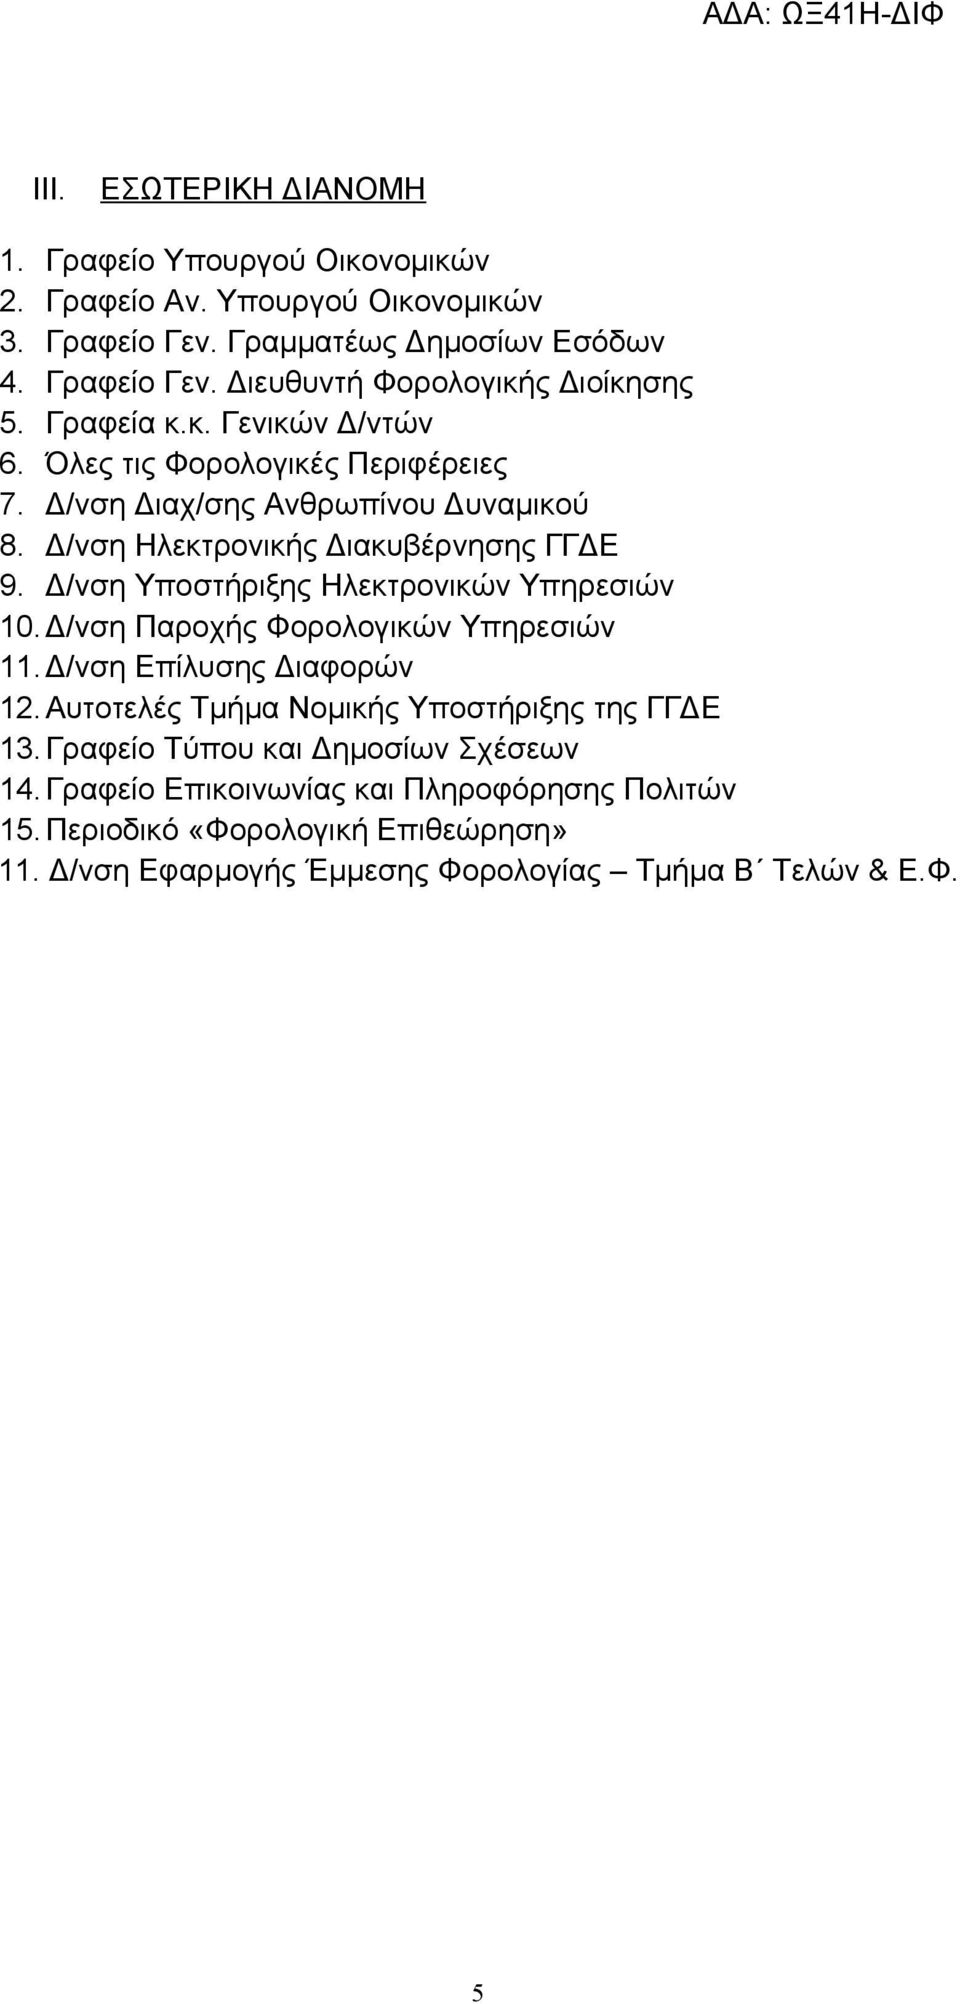 Δ/νση Υποστήριξης Ηλεκτρονικών Υπηρεσιών 10. Δ/νση Παροχής Φορολογικών Υπηρεσιών 11.Δ/νση Επίλυσης Διαφορών 12. Αυτοτελές Τμήμα Νομικής Υποστήριξης της ΓΓΔΕ 13.